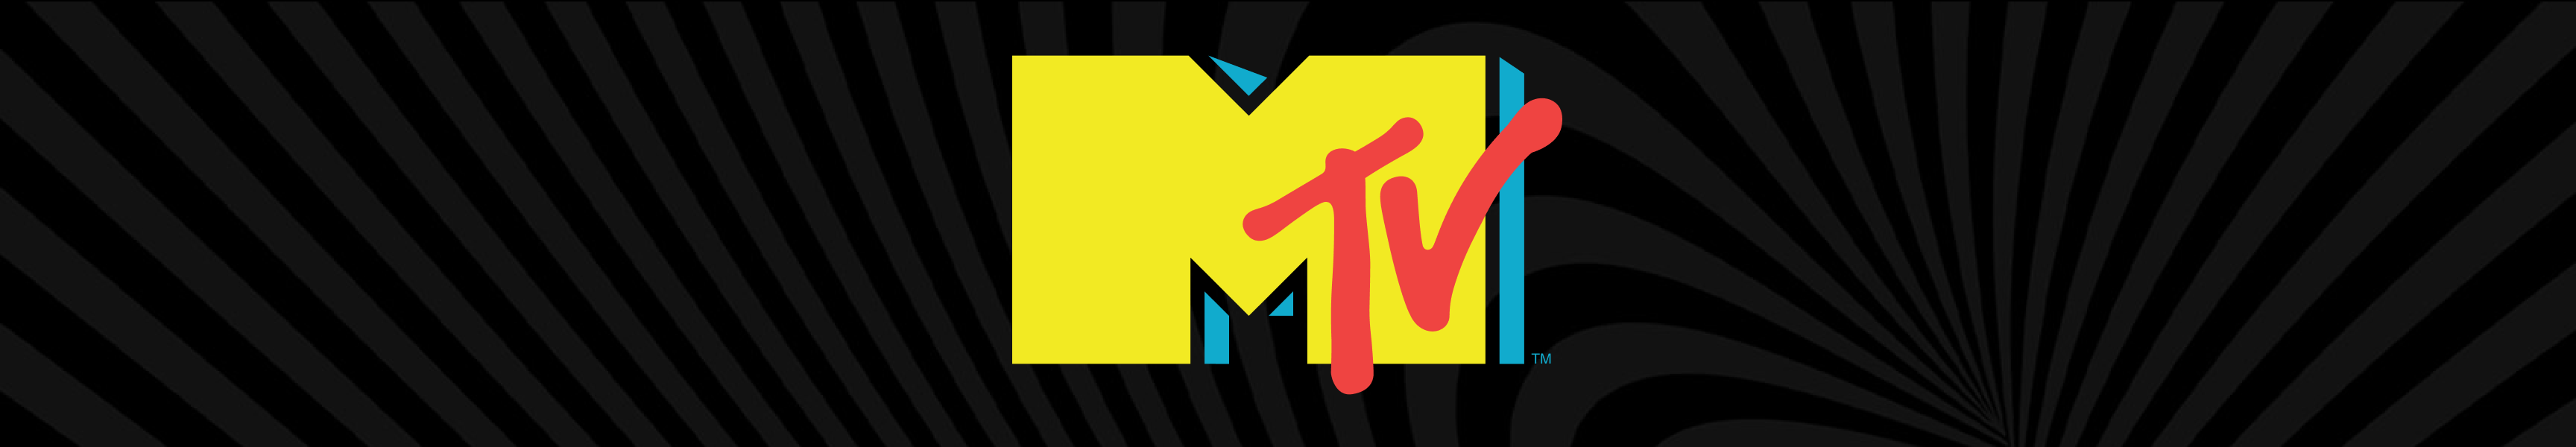 Chaussettes et chaussures MTV